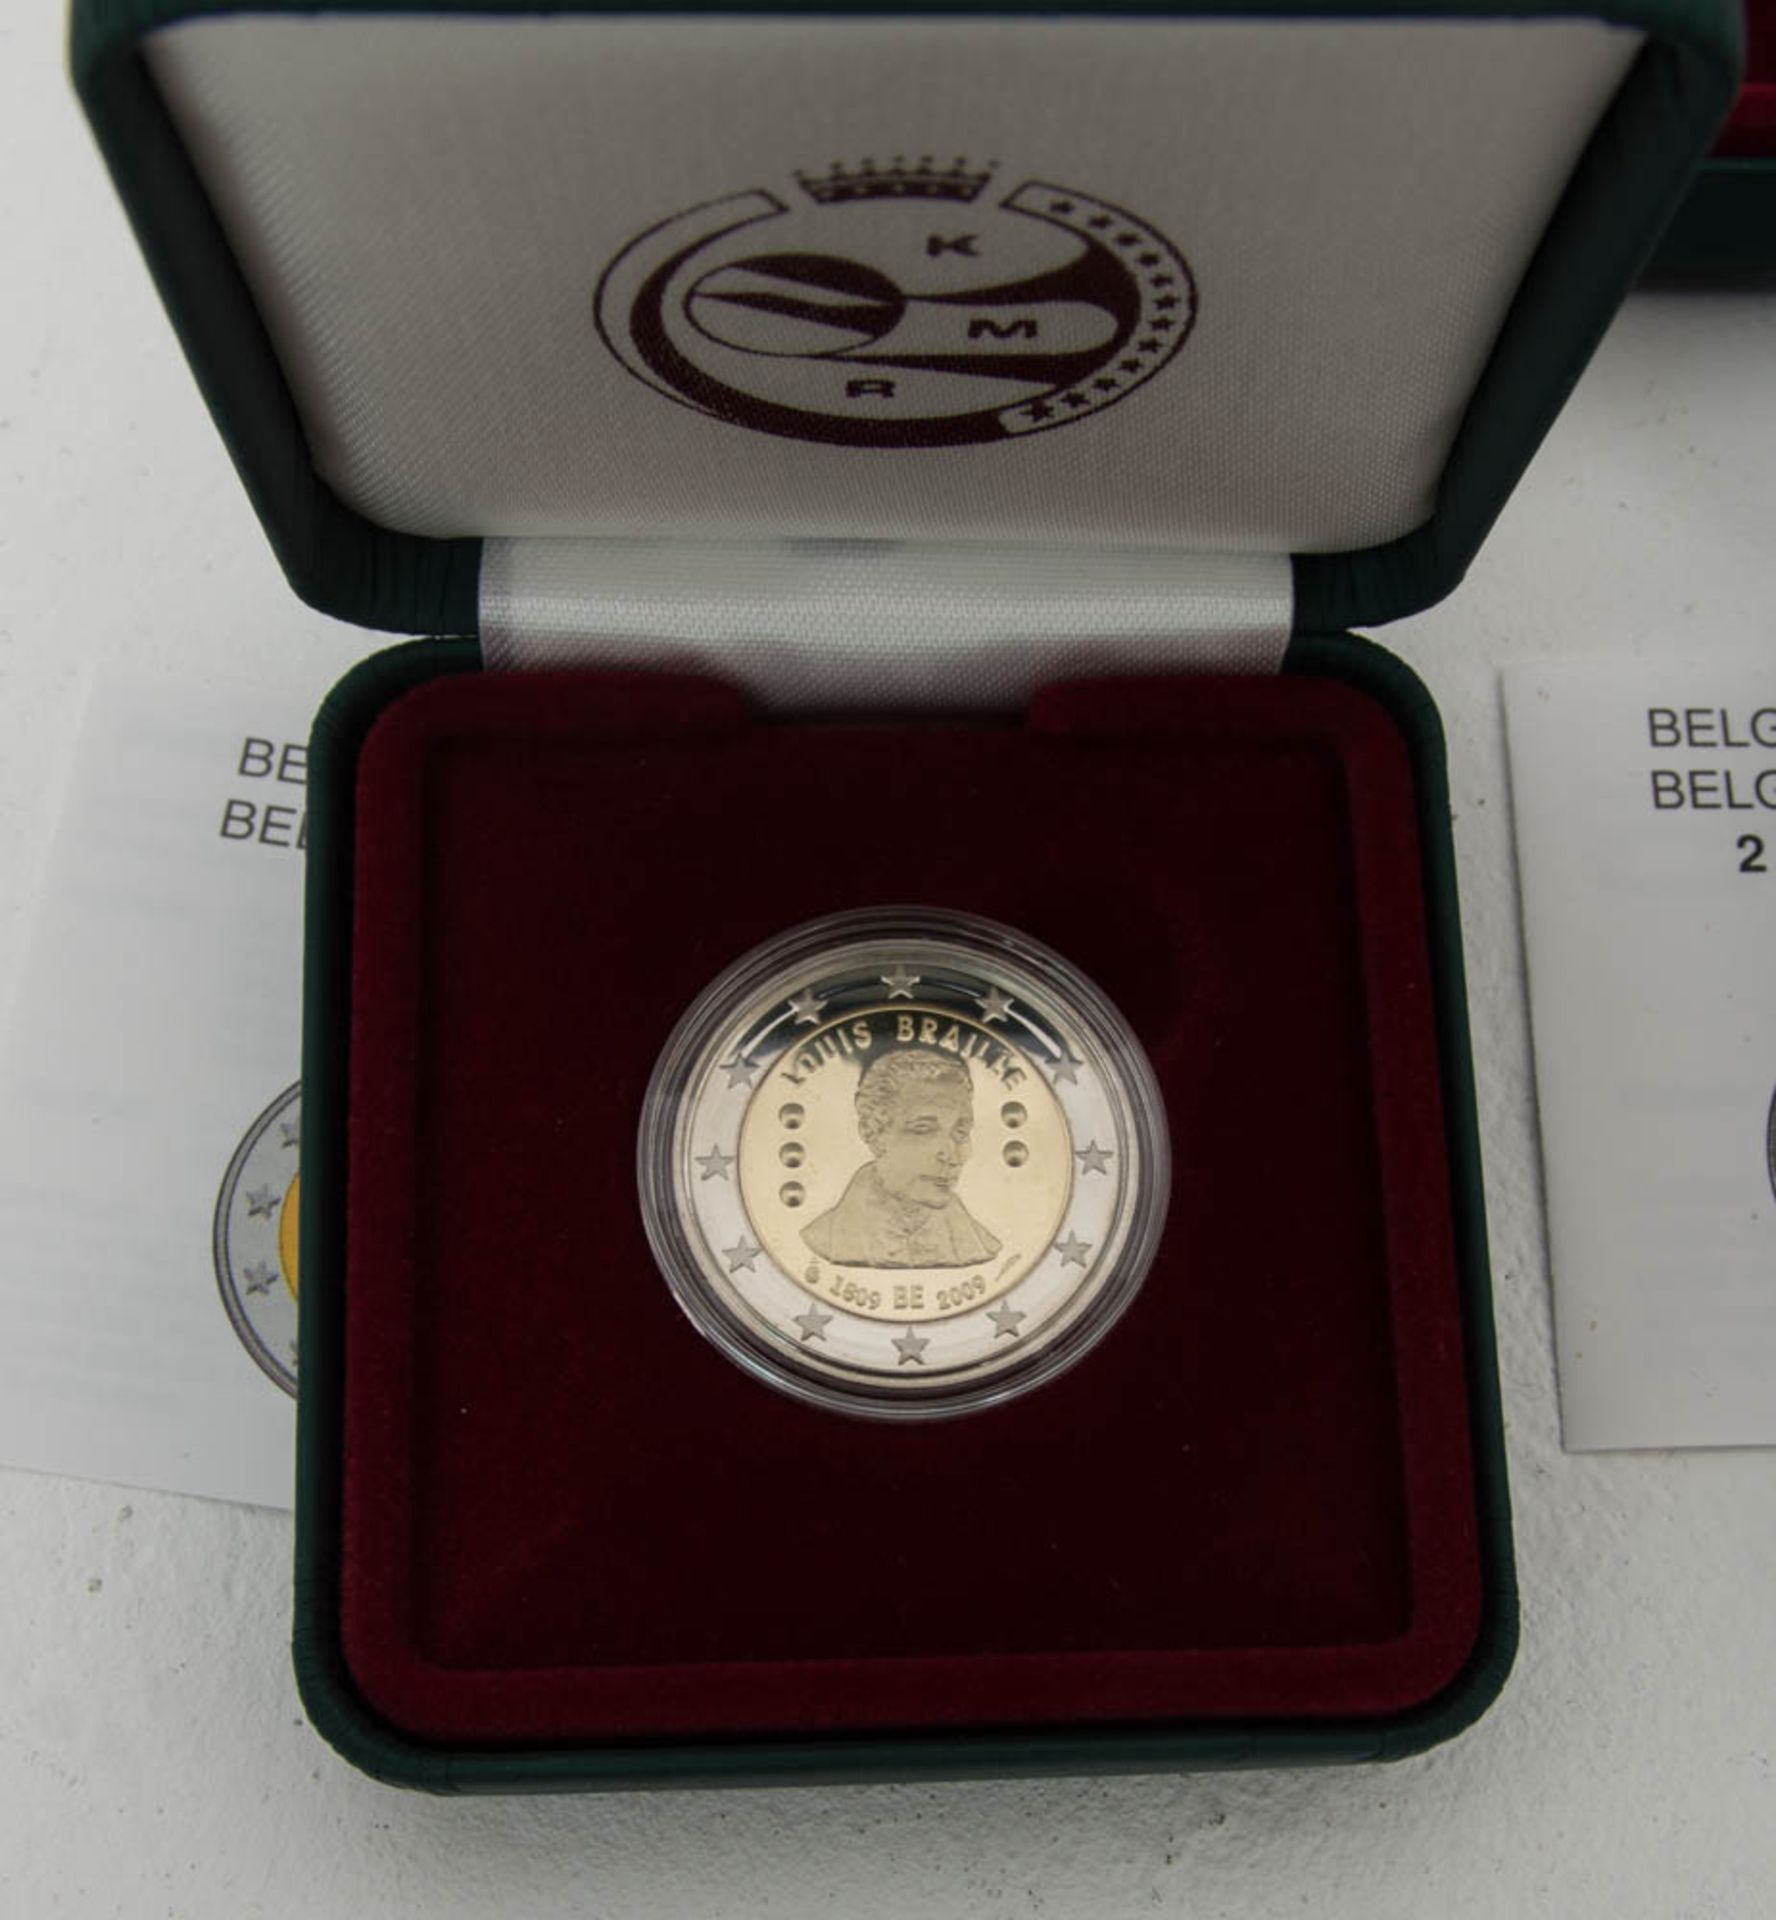 Sammlung Belgien 2 € Münzen.15 Stück, durchweg Sammlerqualität mit OVPs.Belgie - Bild 2 aus 6